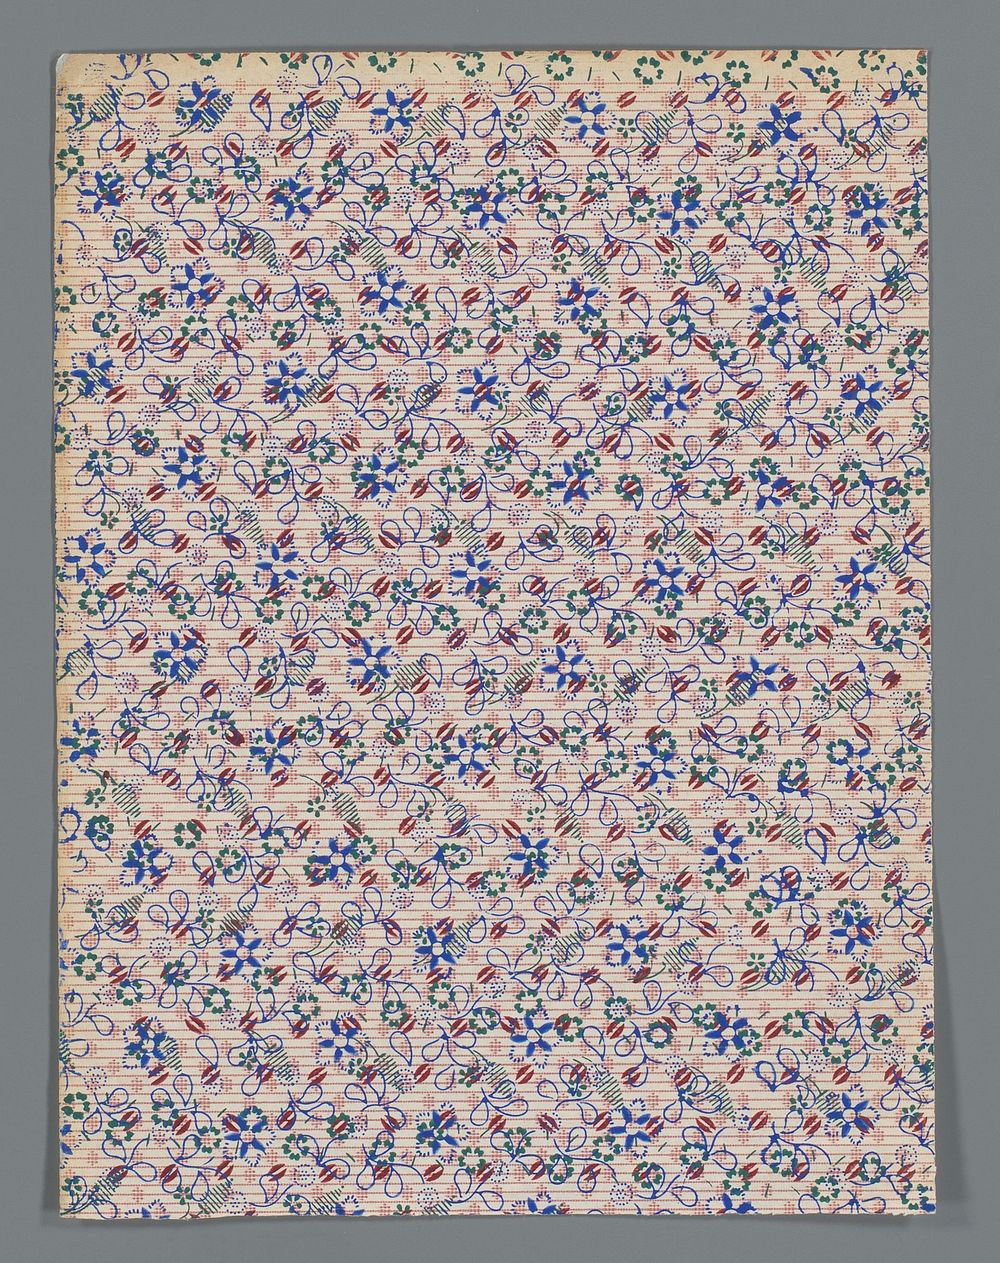 Blad met strooipatroon van gestileerde bloemen (c. 1900 - c. 1970) by anonymous